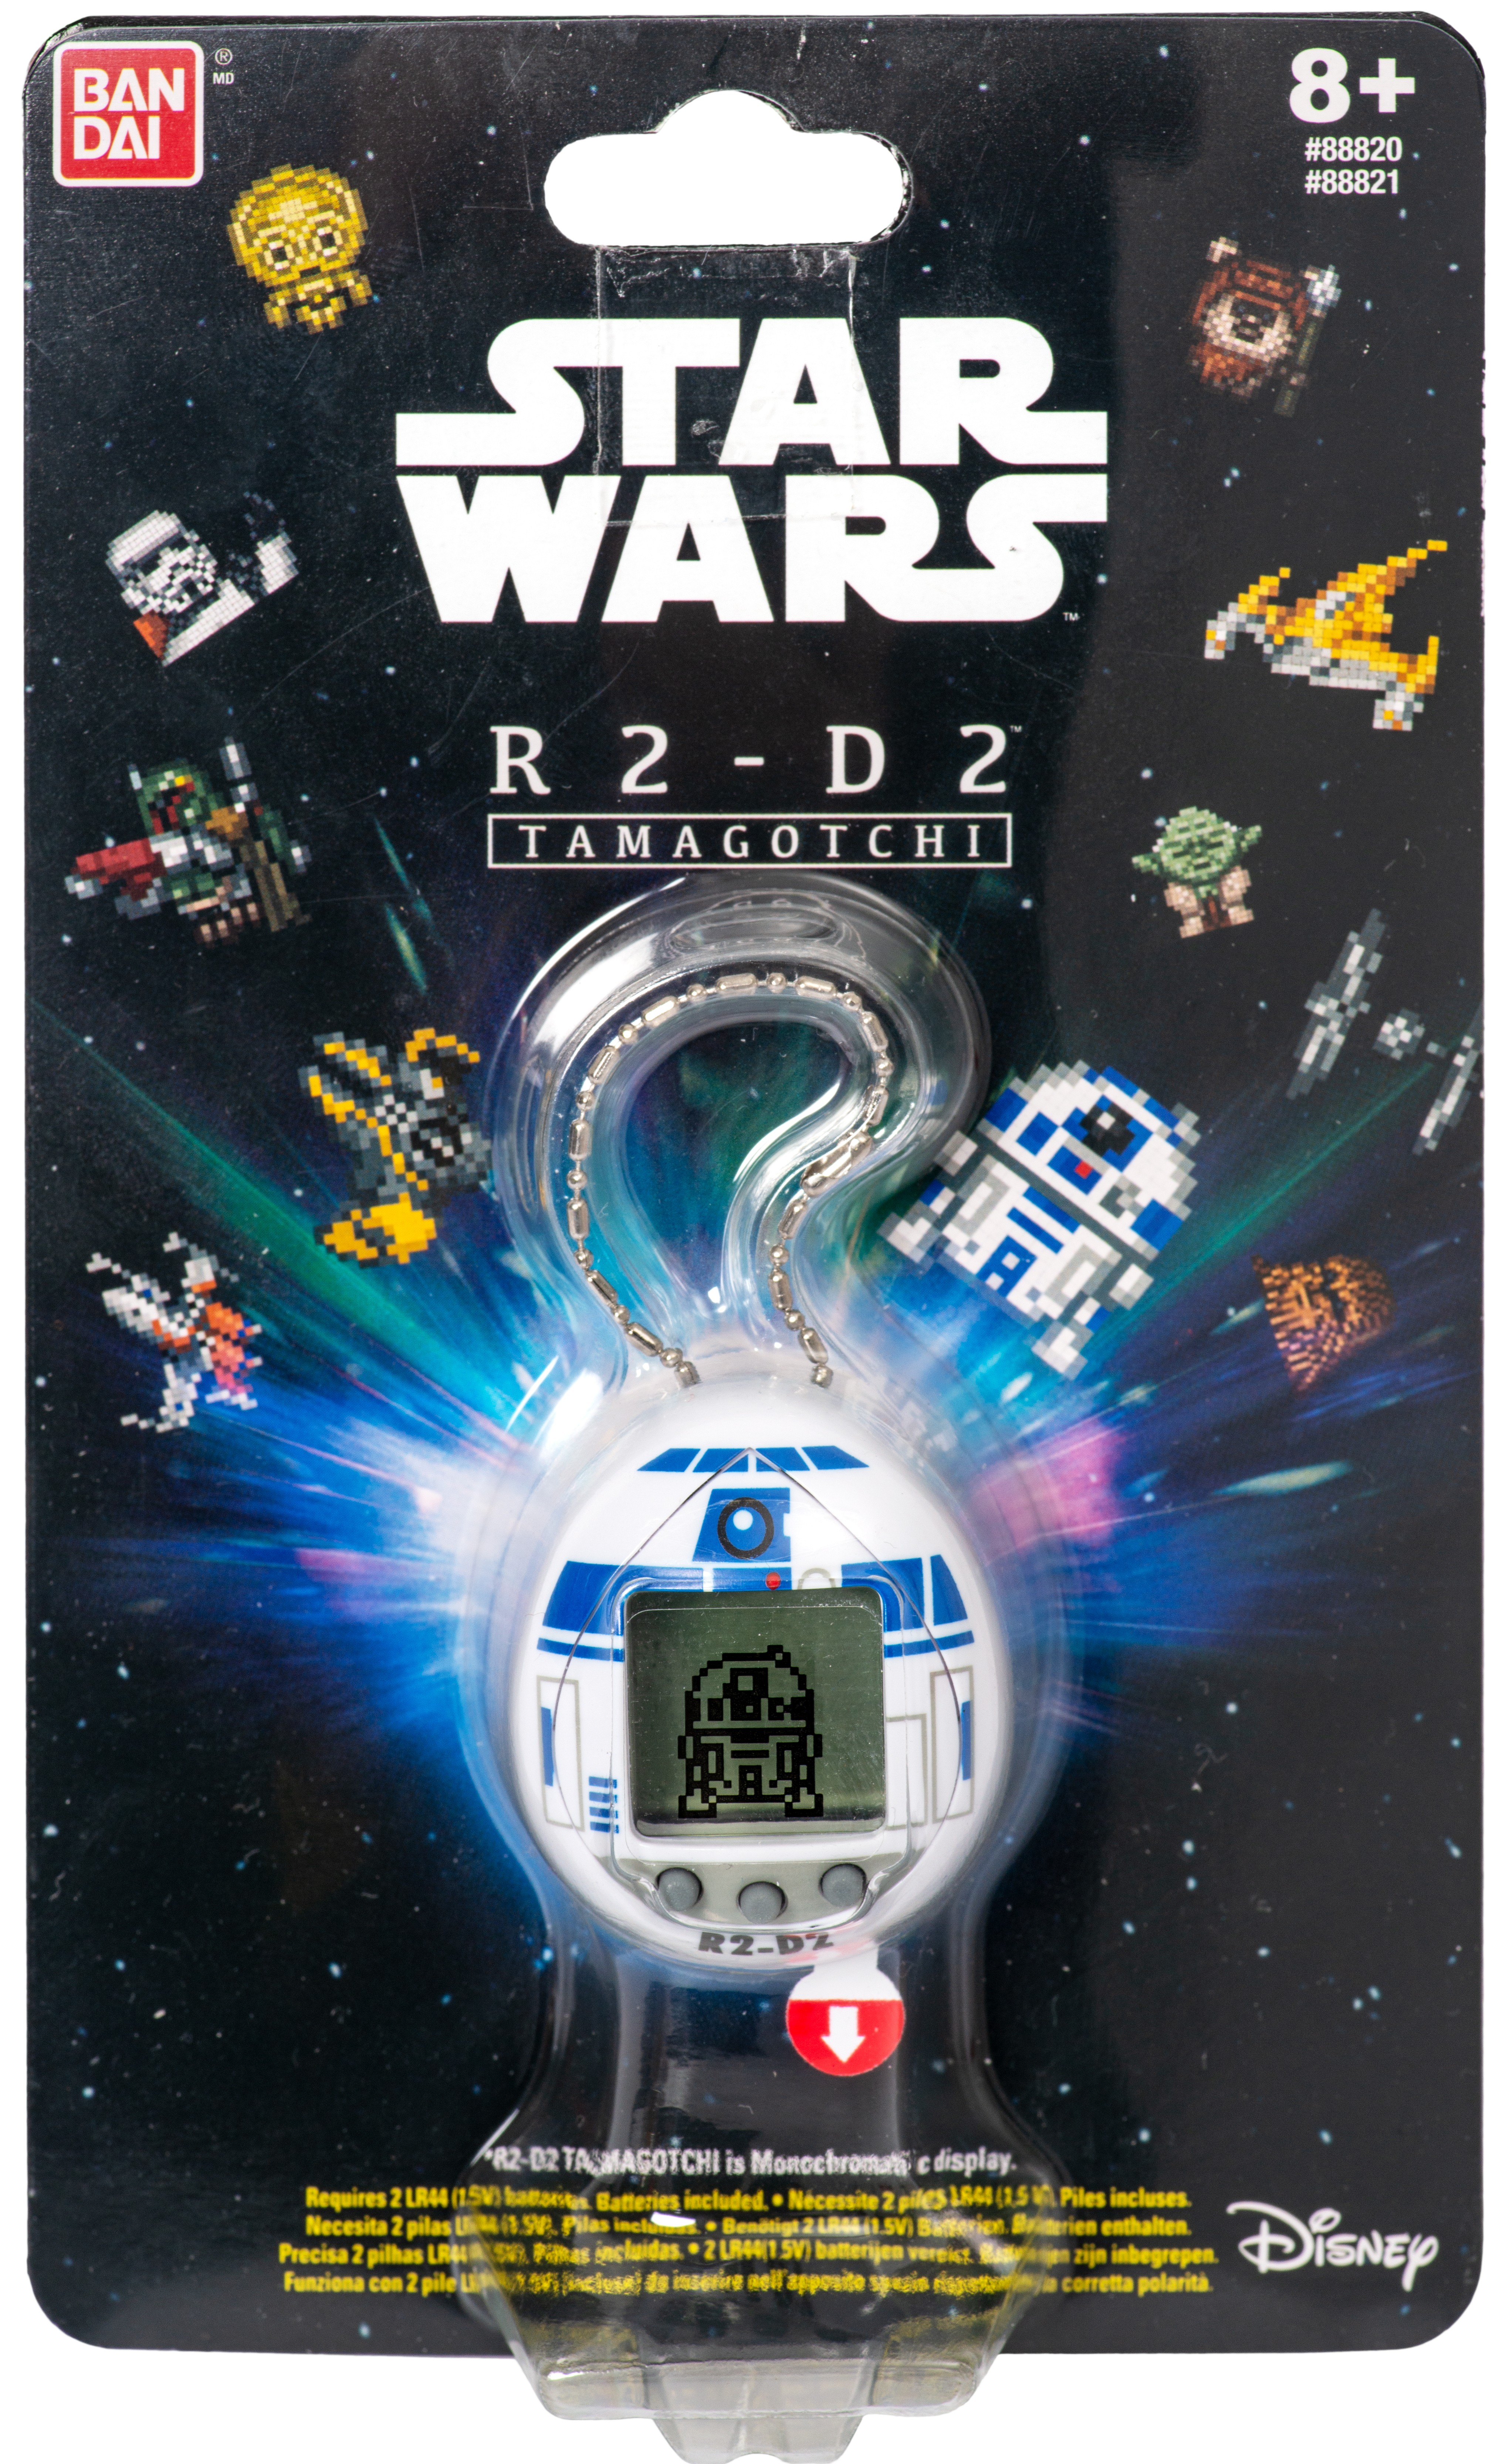 Wars Tamagotchi Star BANDAI R2-D2